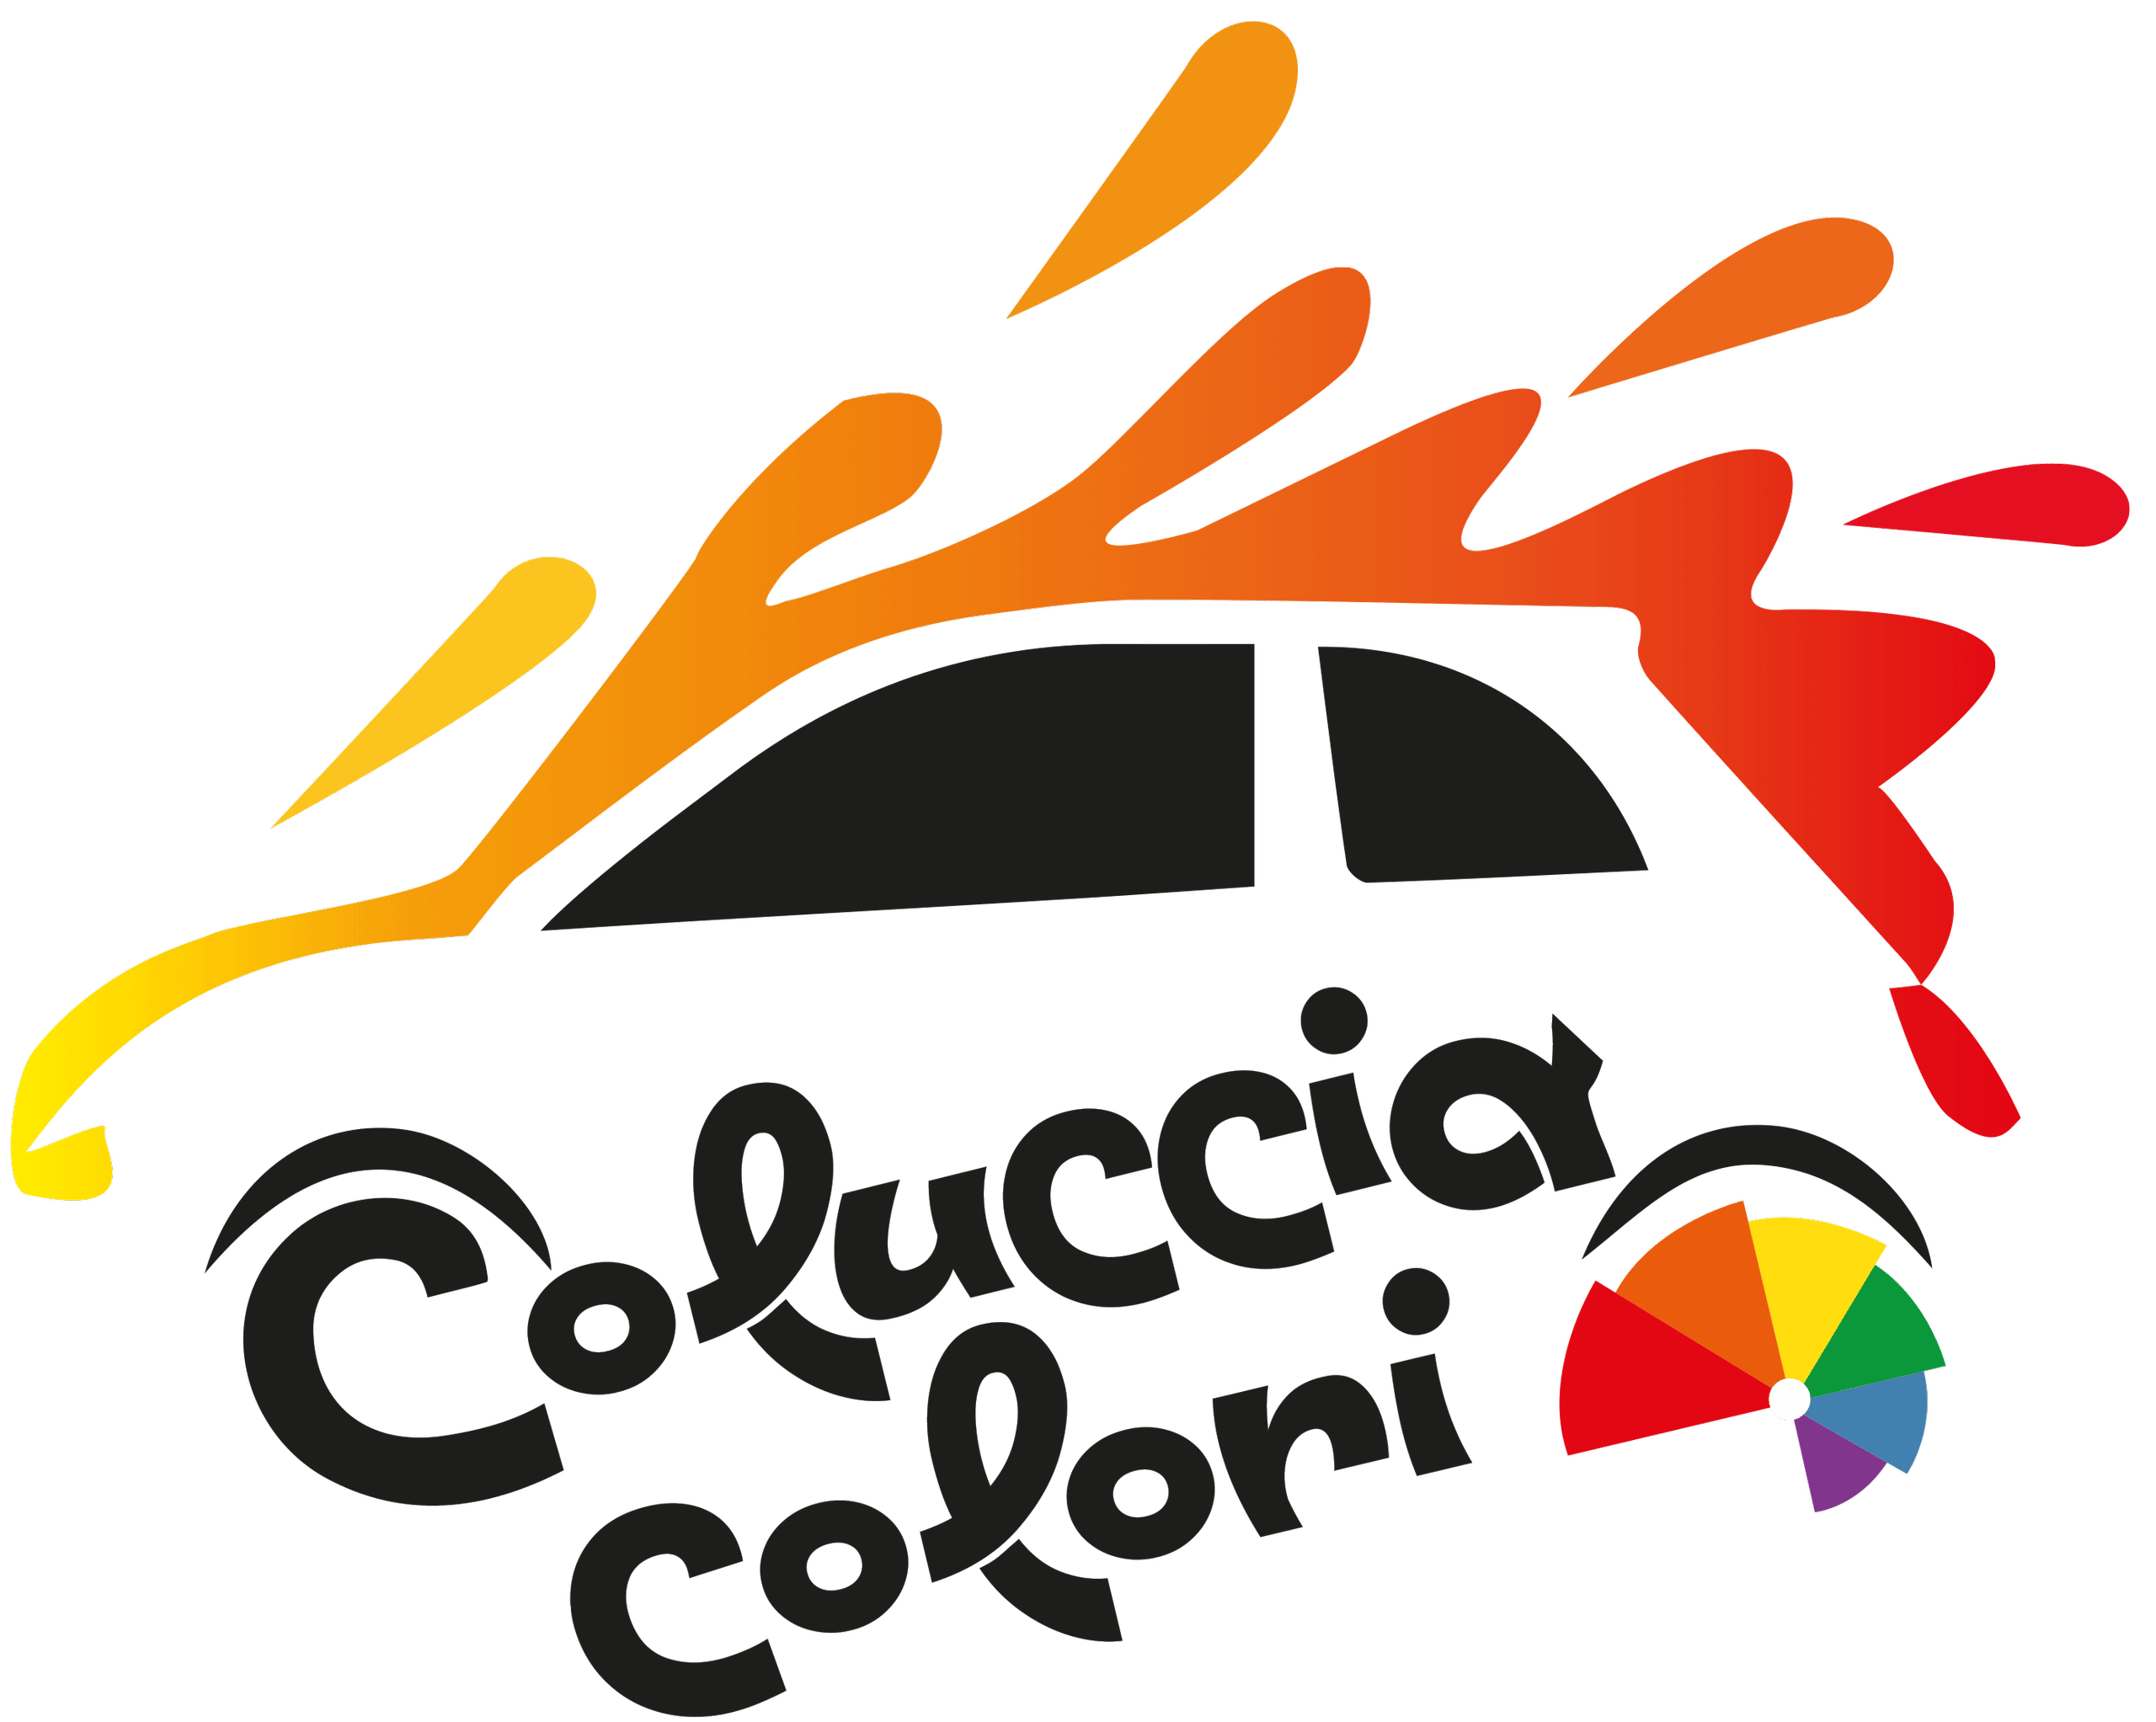 Coluccia Colori